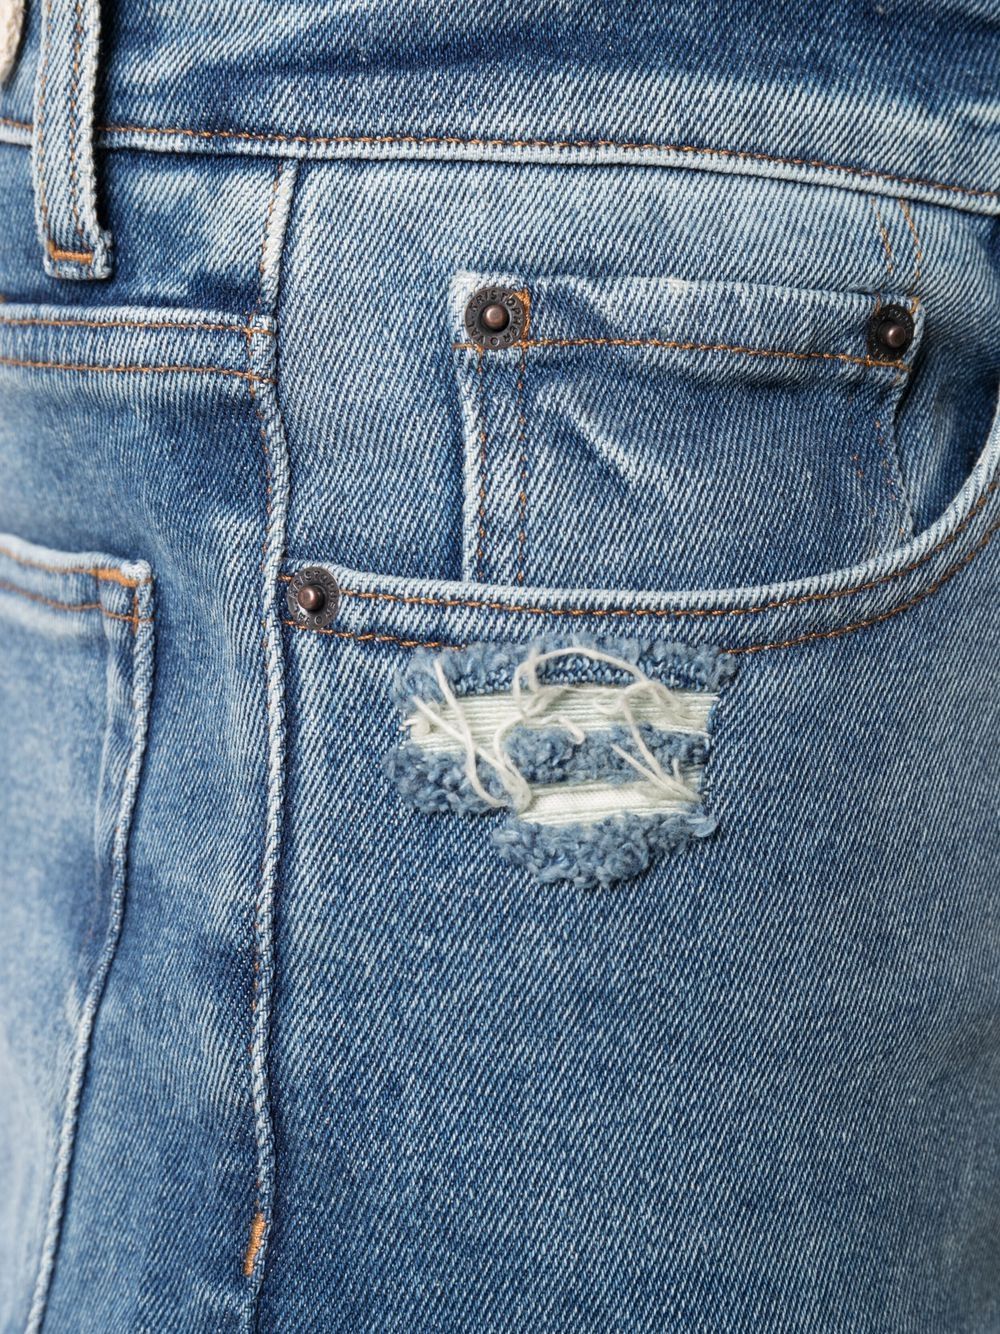 фото Val kristopher джинсы кроя слим с эффектом потертости